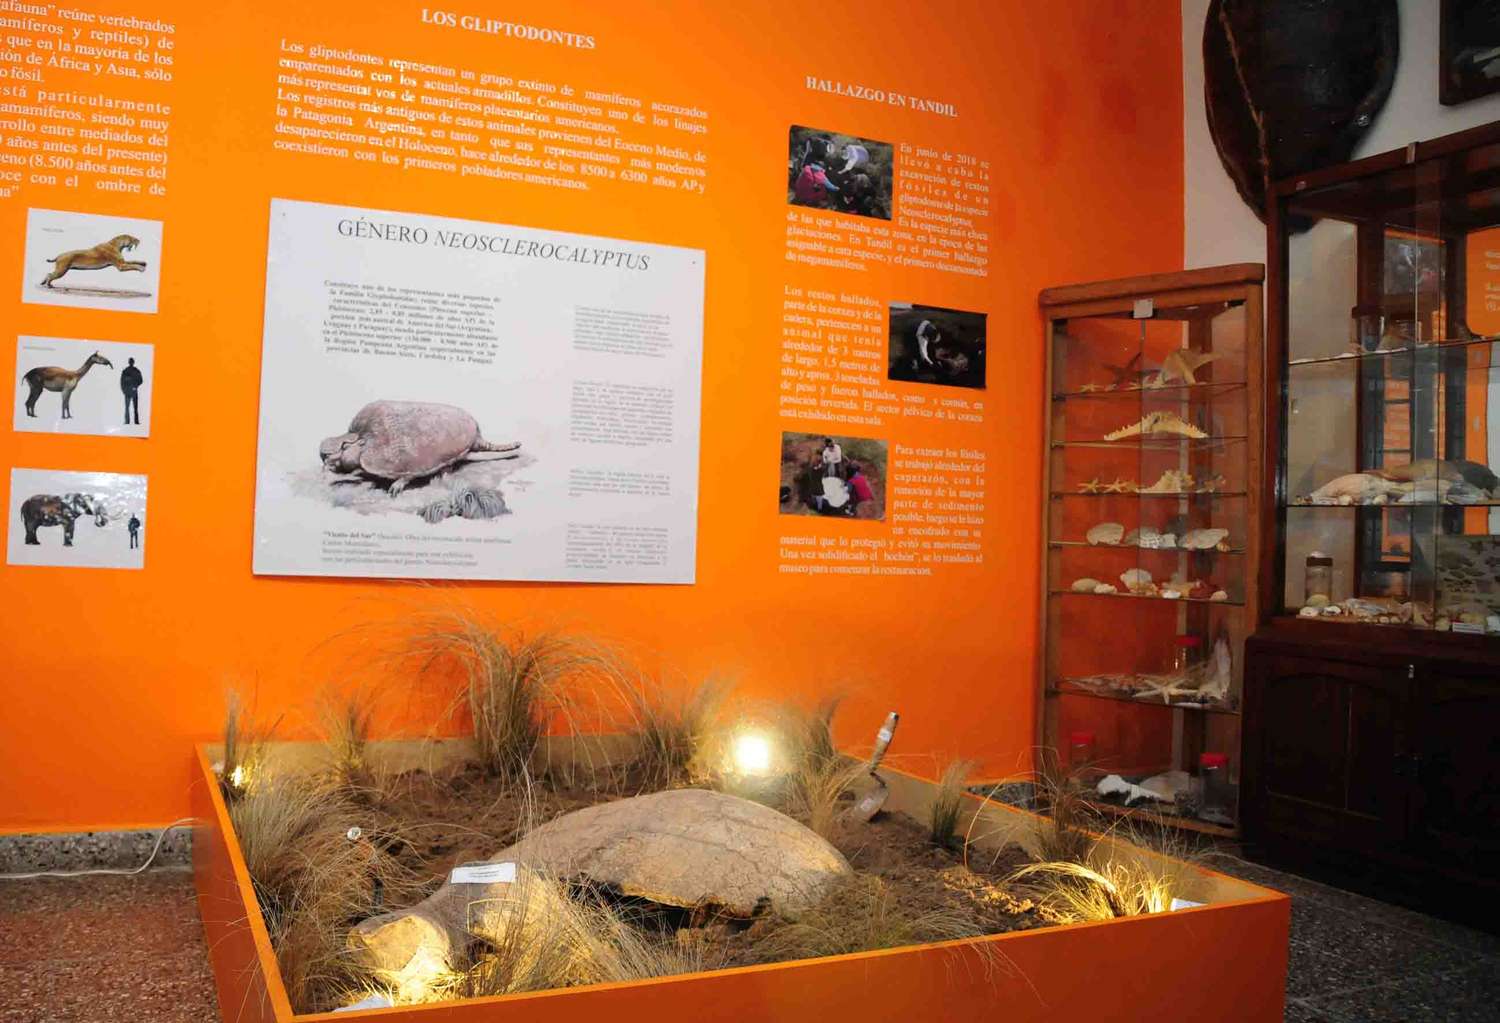 Los restos del gliptodonte ya se exhiben en el Museo, como prueba de un hallazgo histórico para Tandil